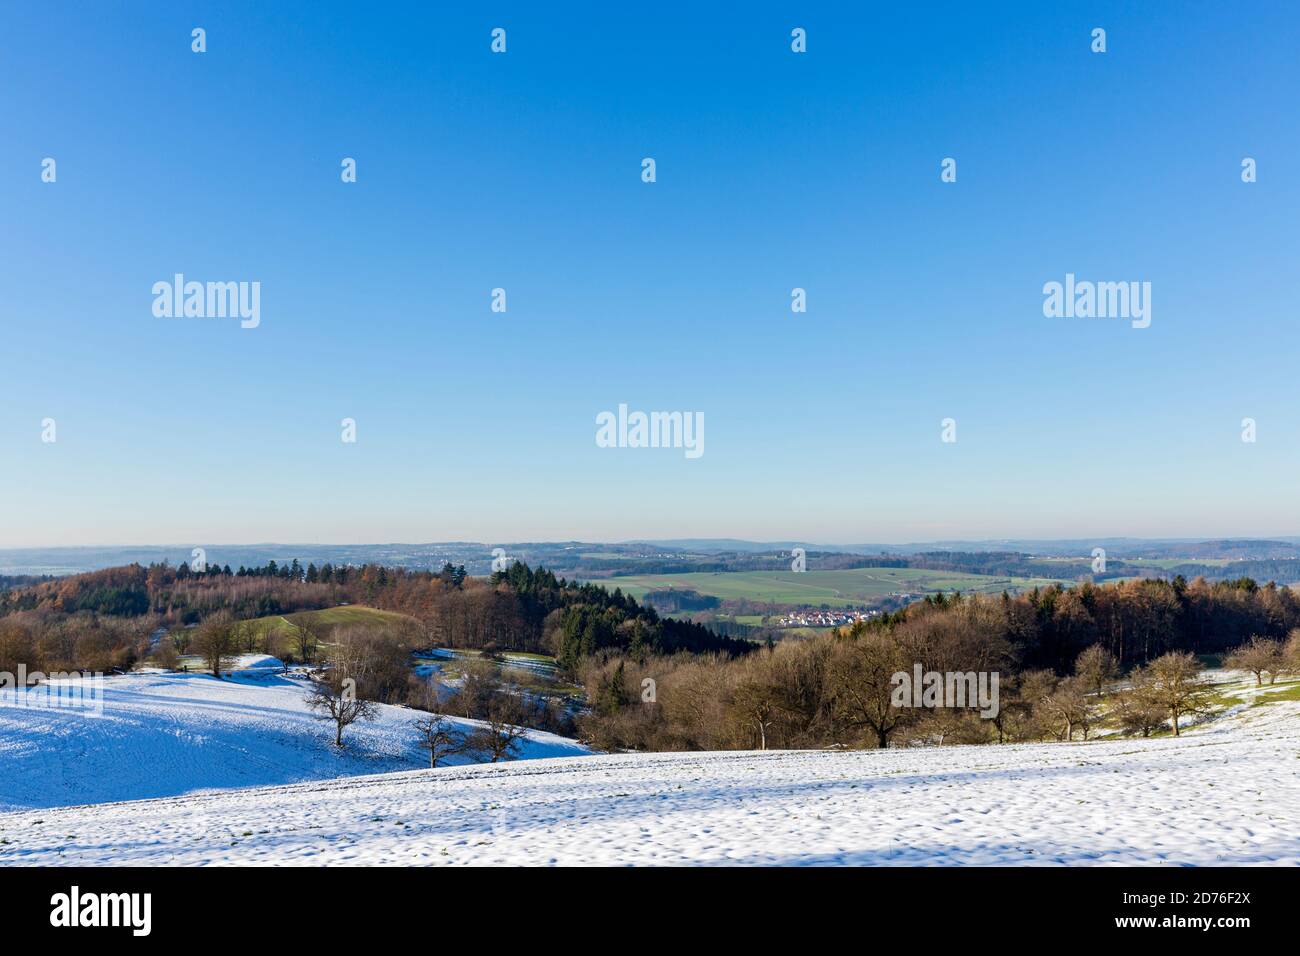 Stauferland, Landschaft, Hügel, Ortschaft, Wald, Felder, Schnee Stock Photo